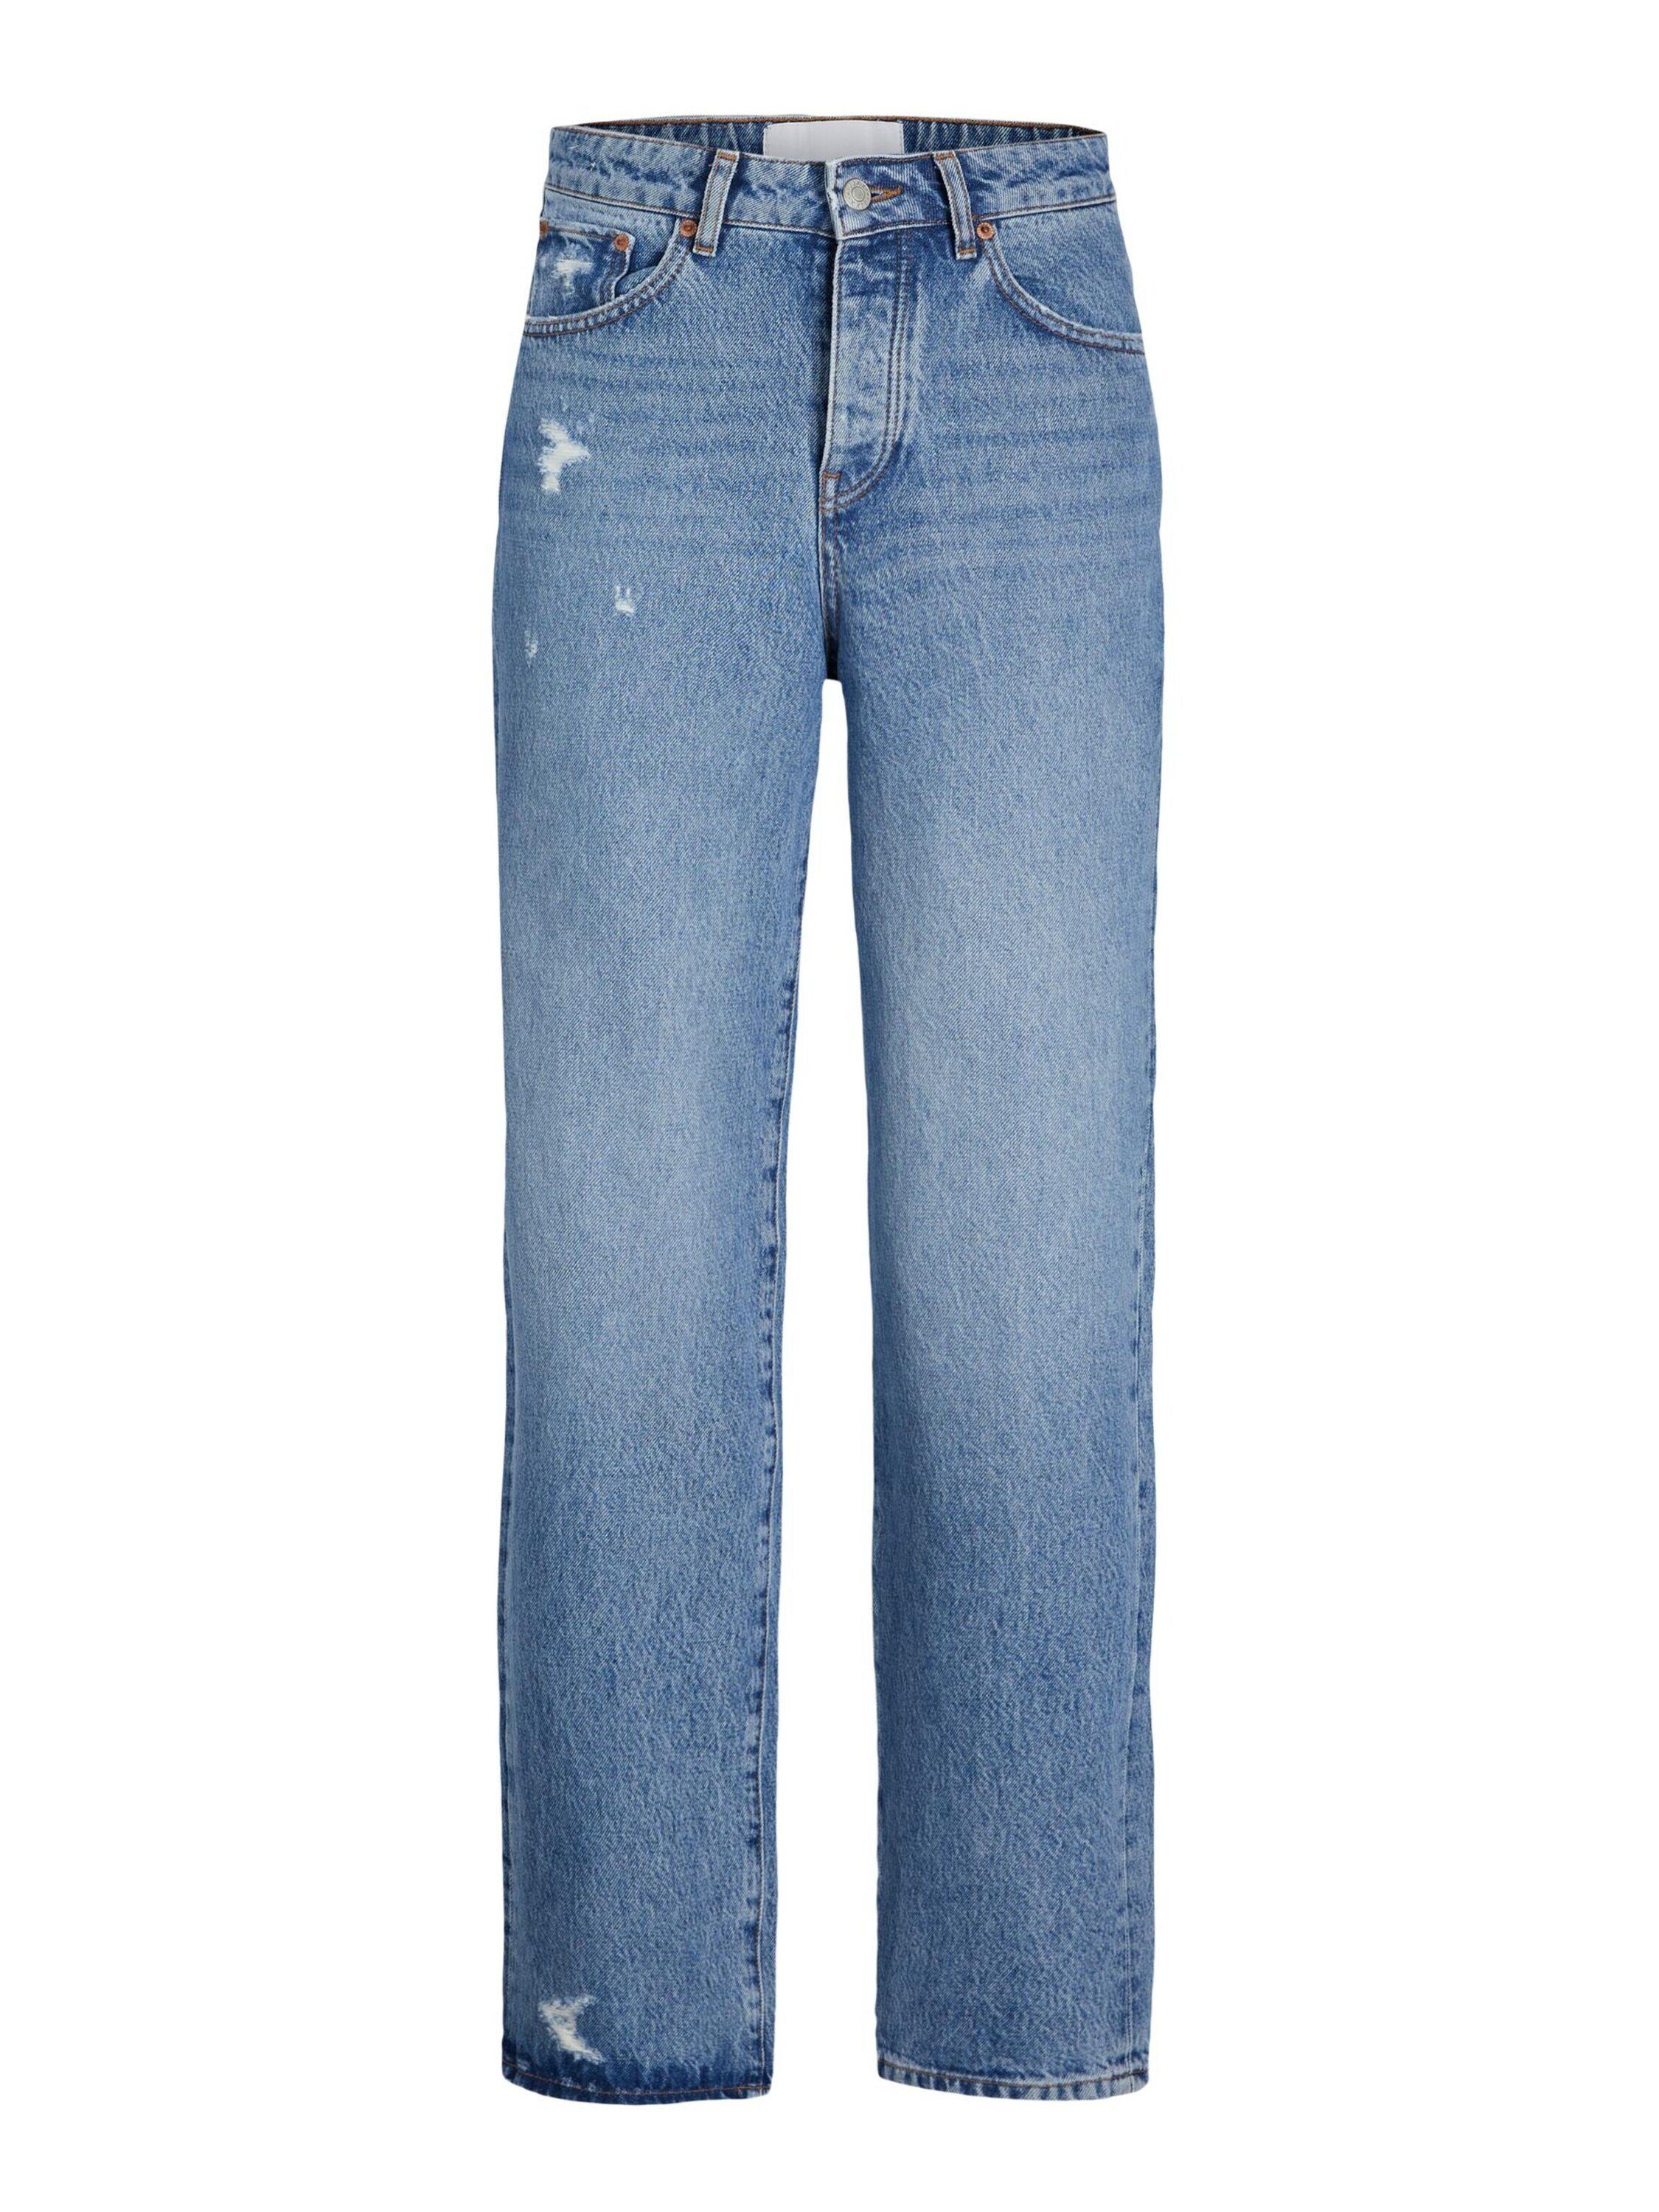 JJXX Weite Jeans SEVILLE (1-tlg) Detail Details, Plain/ohne Weiteres